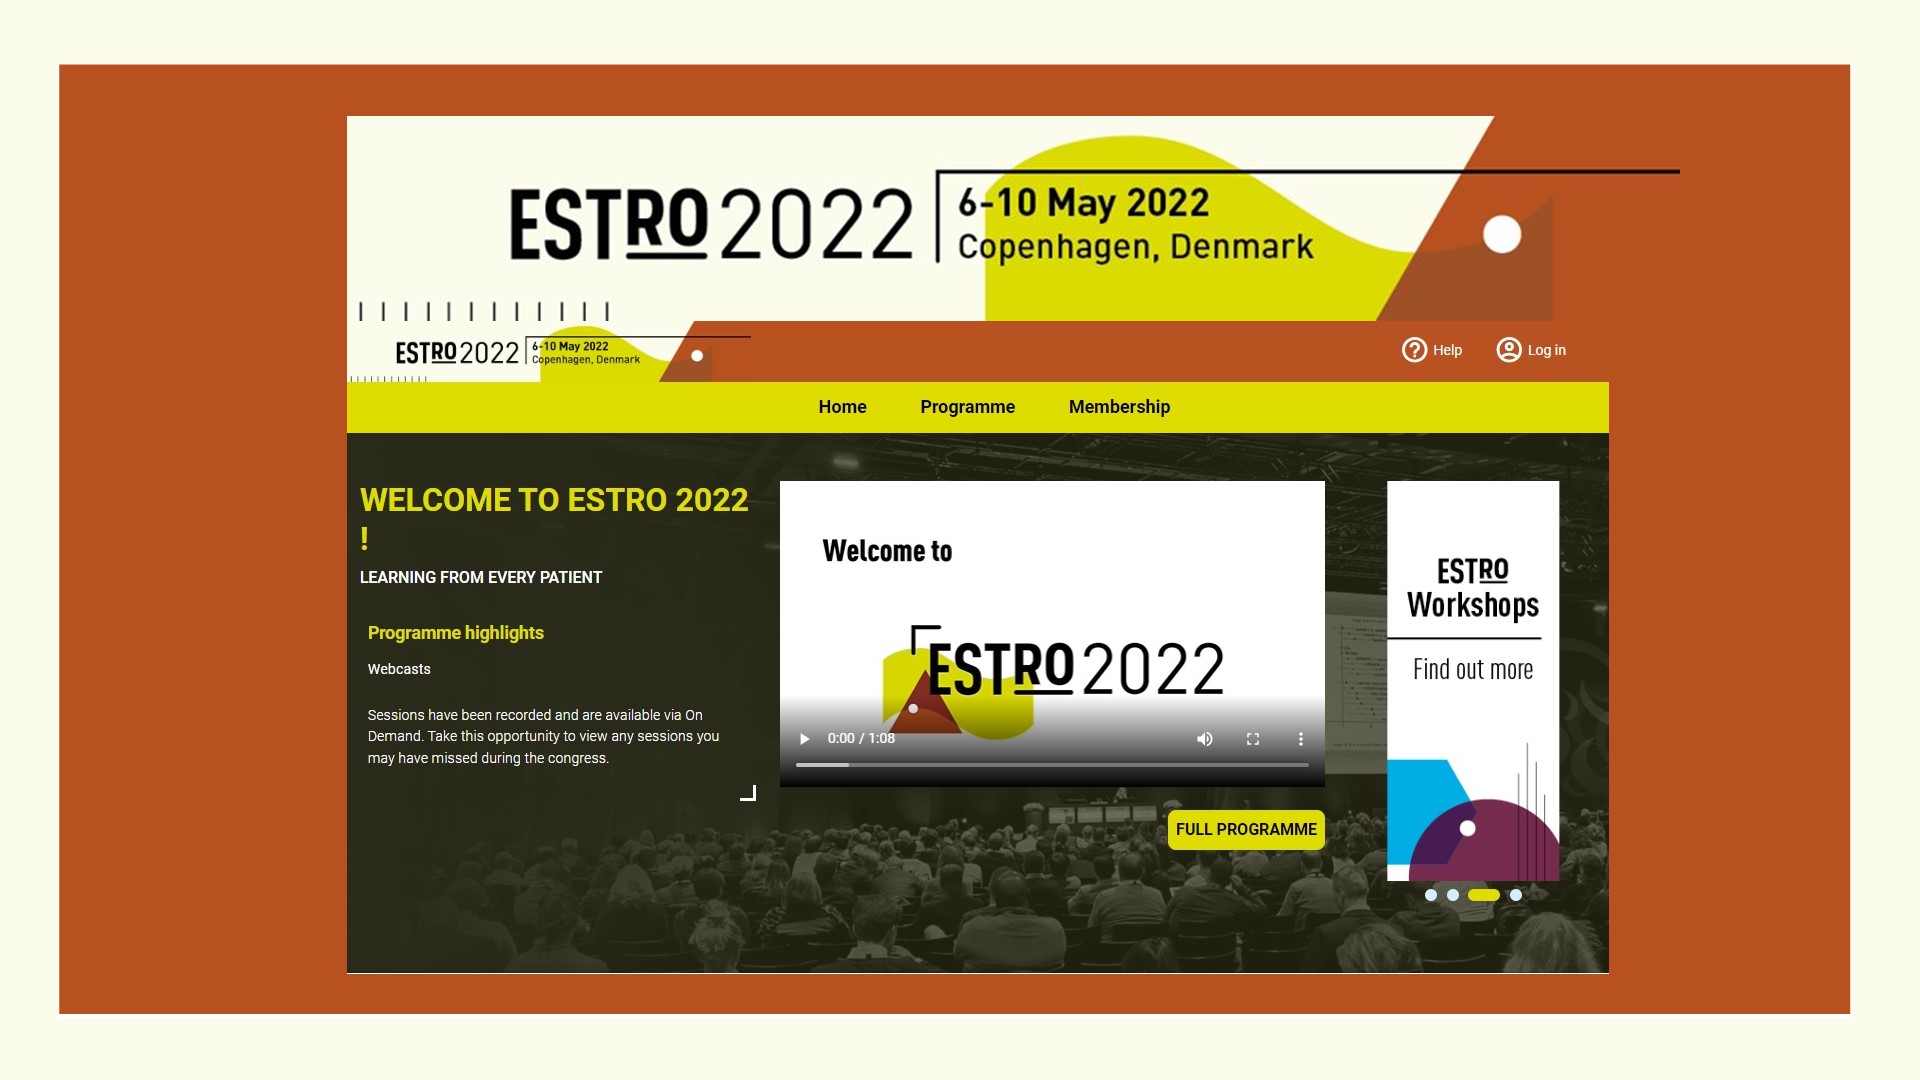 Siriraj Faculty Abroad at ESTRO 2022